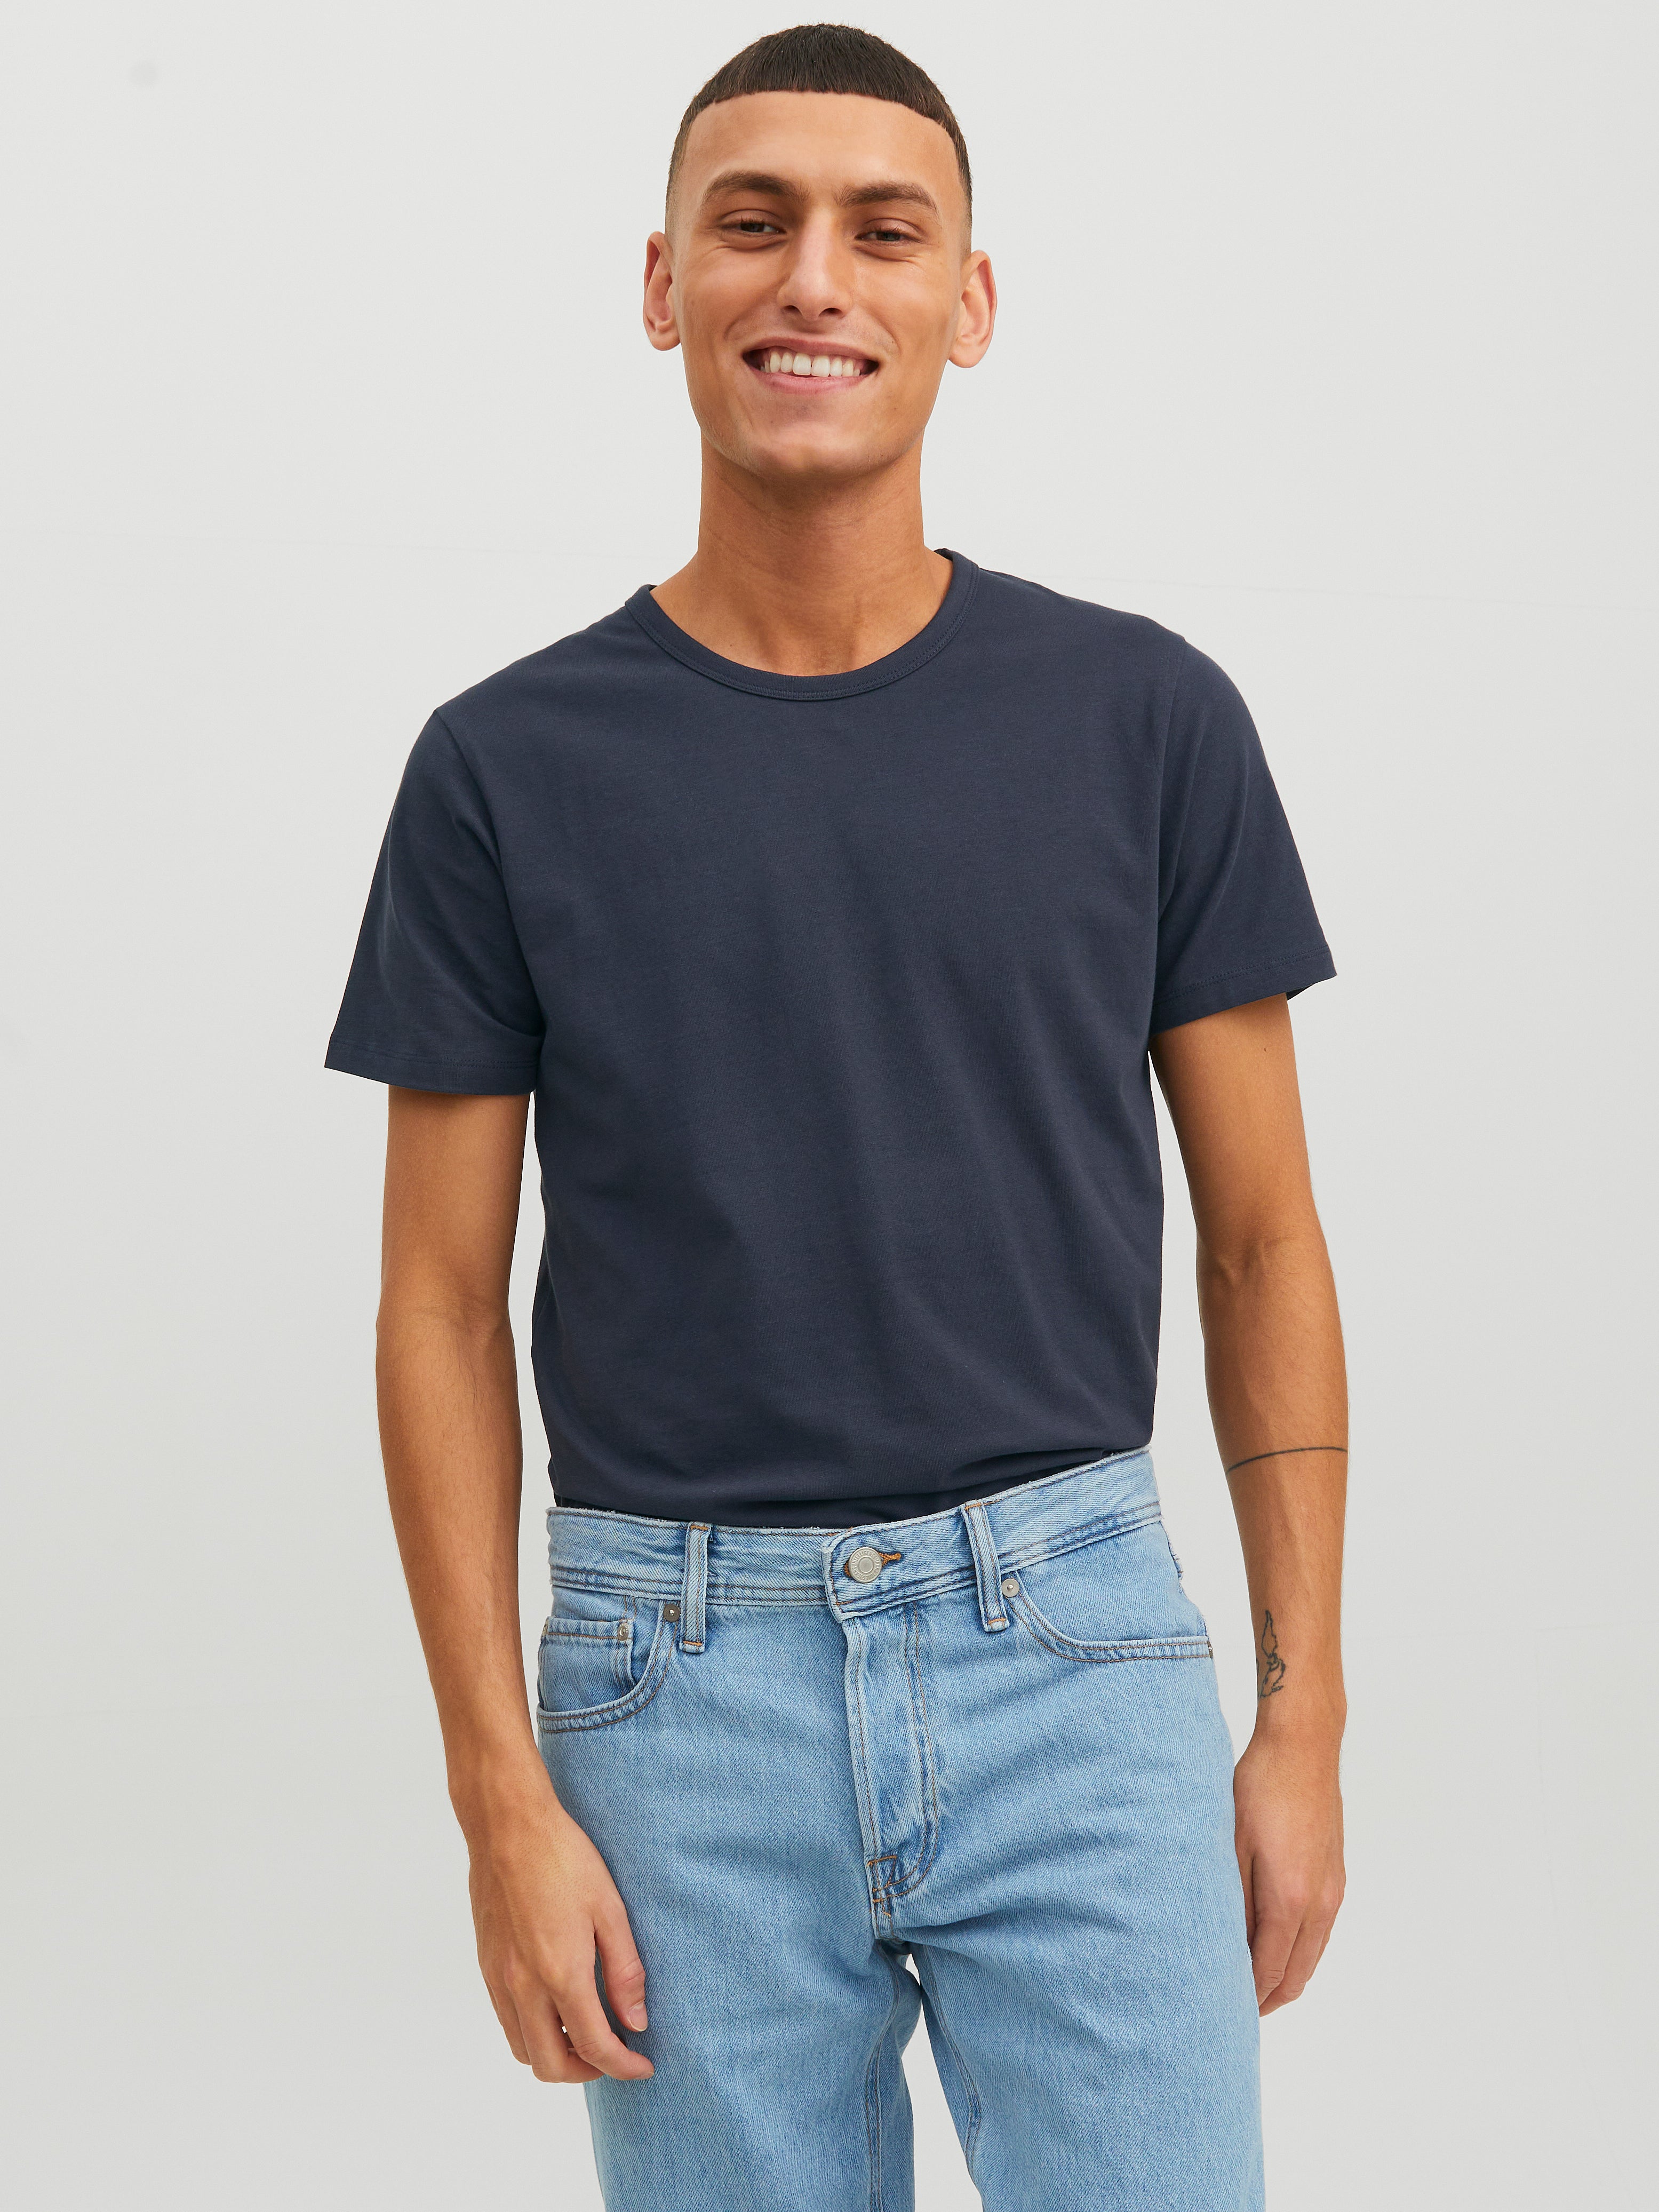 JUST T-Shirt Blau S Rabatt 92 % DAMEN Hemden & T-Shirts Basisch 